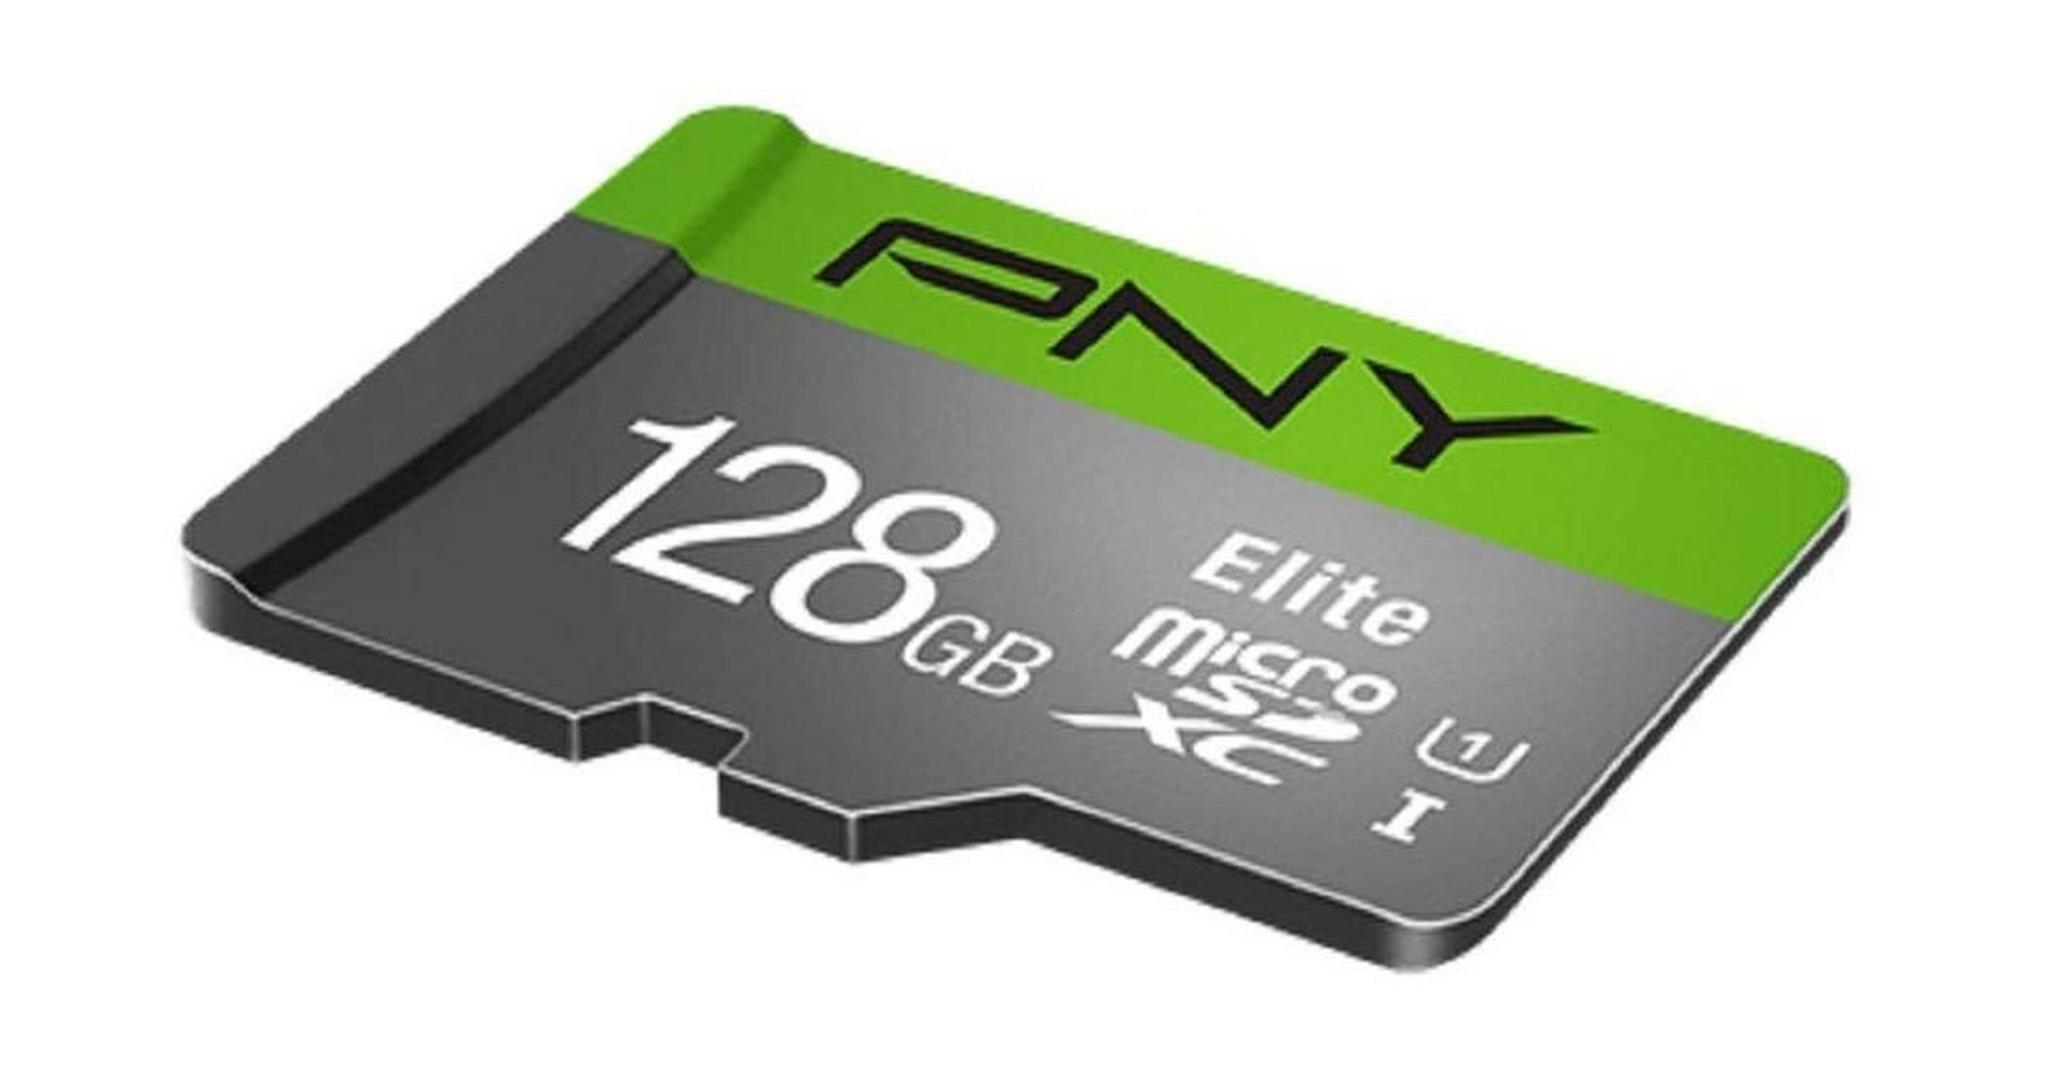 بطاقة ذاكرة PNY إليت مايكروSDXC سعة 128 جيجابايت من الفئة 10